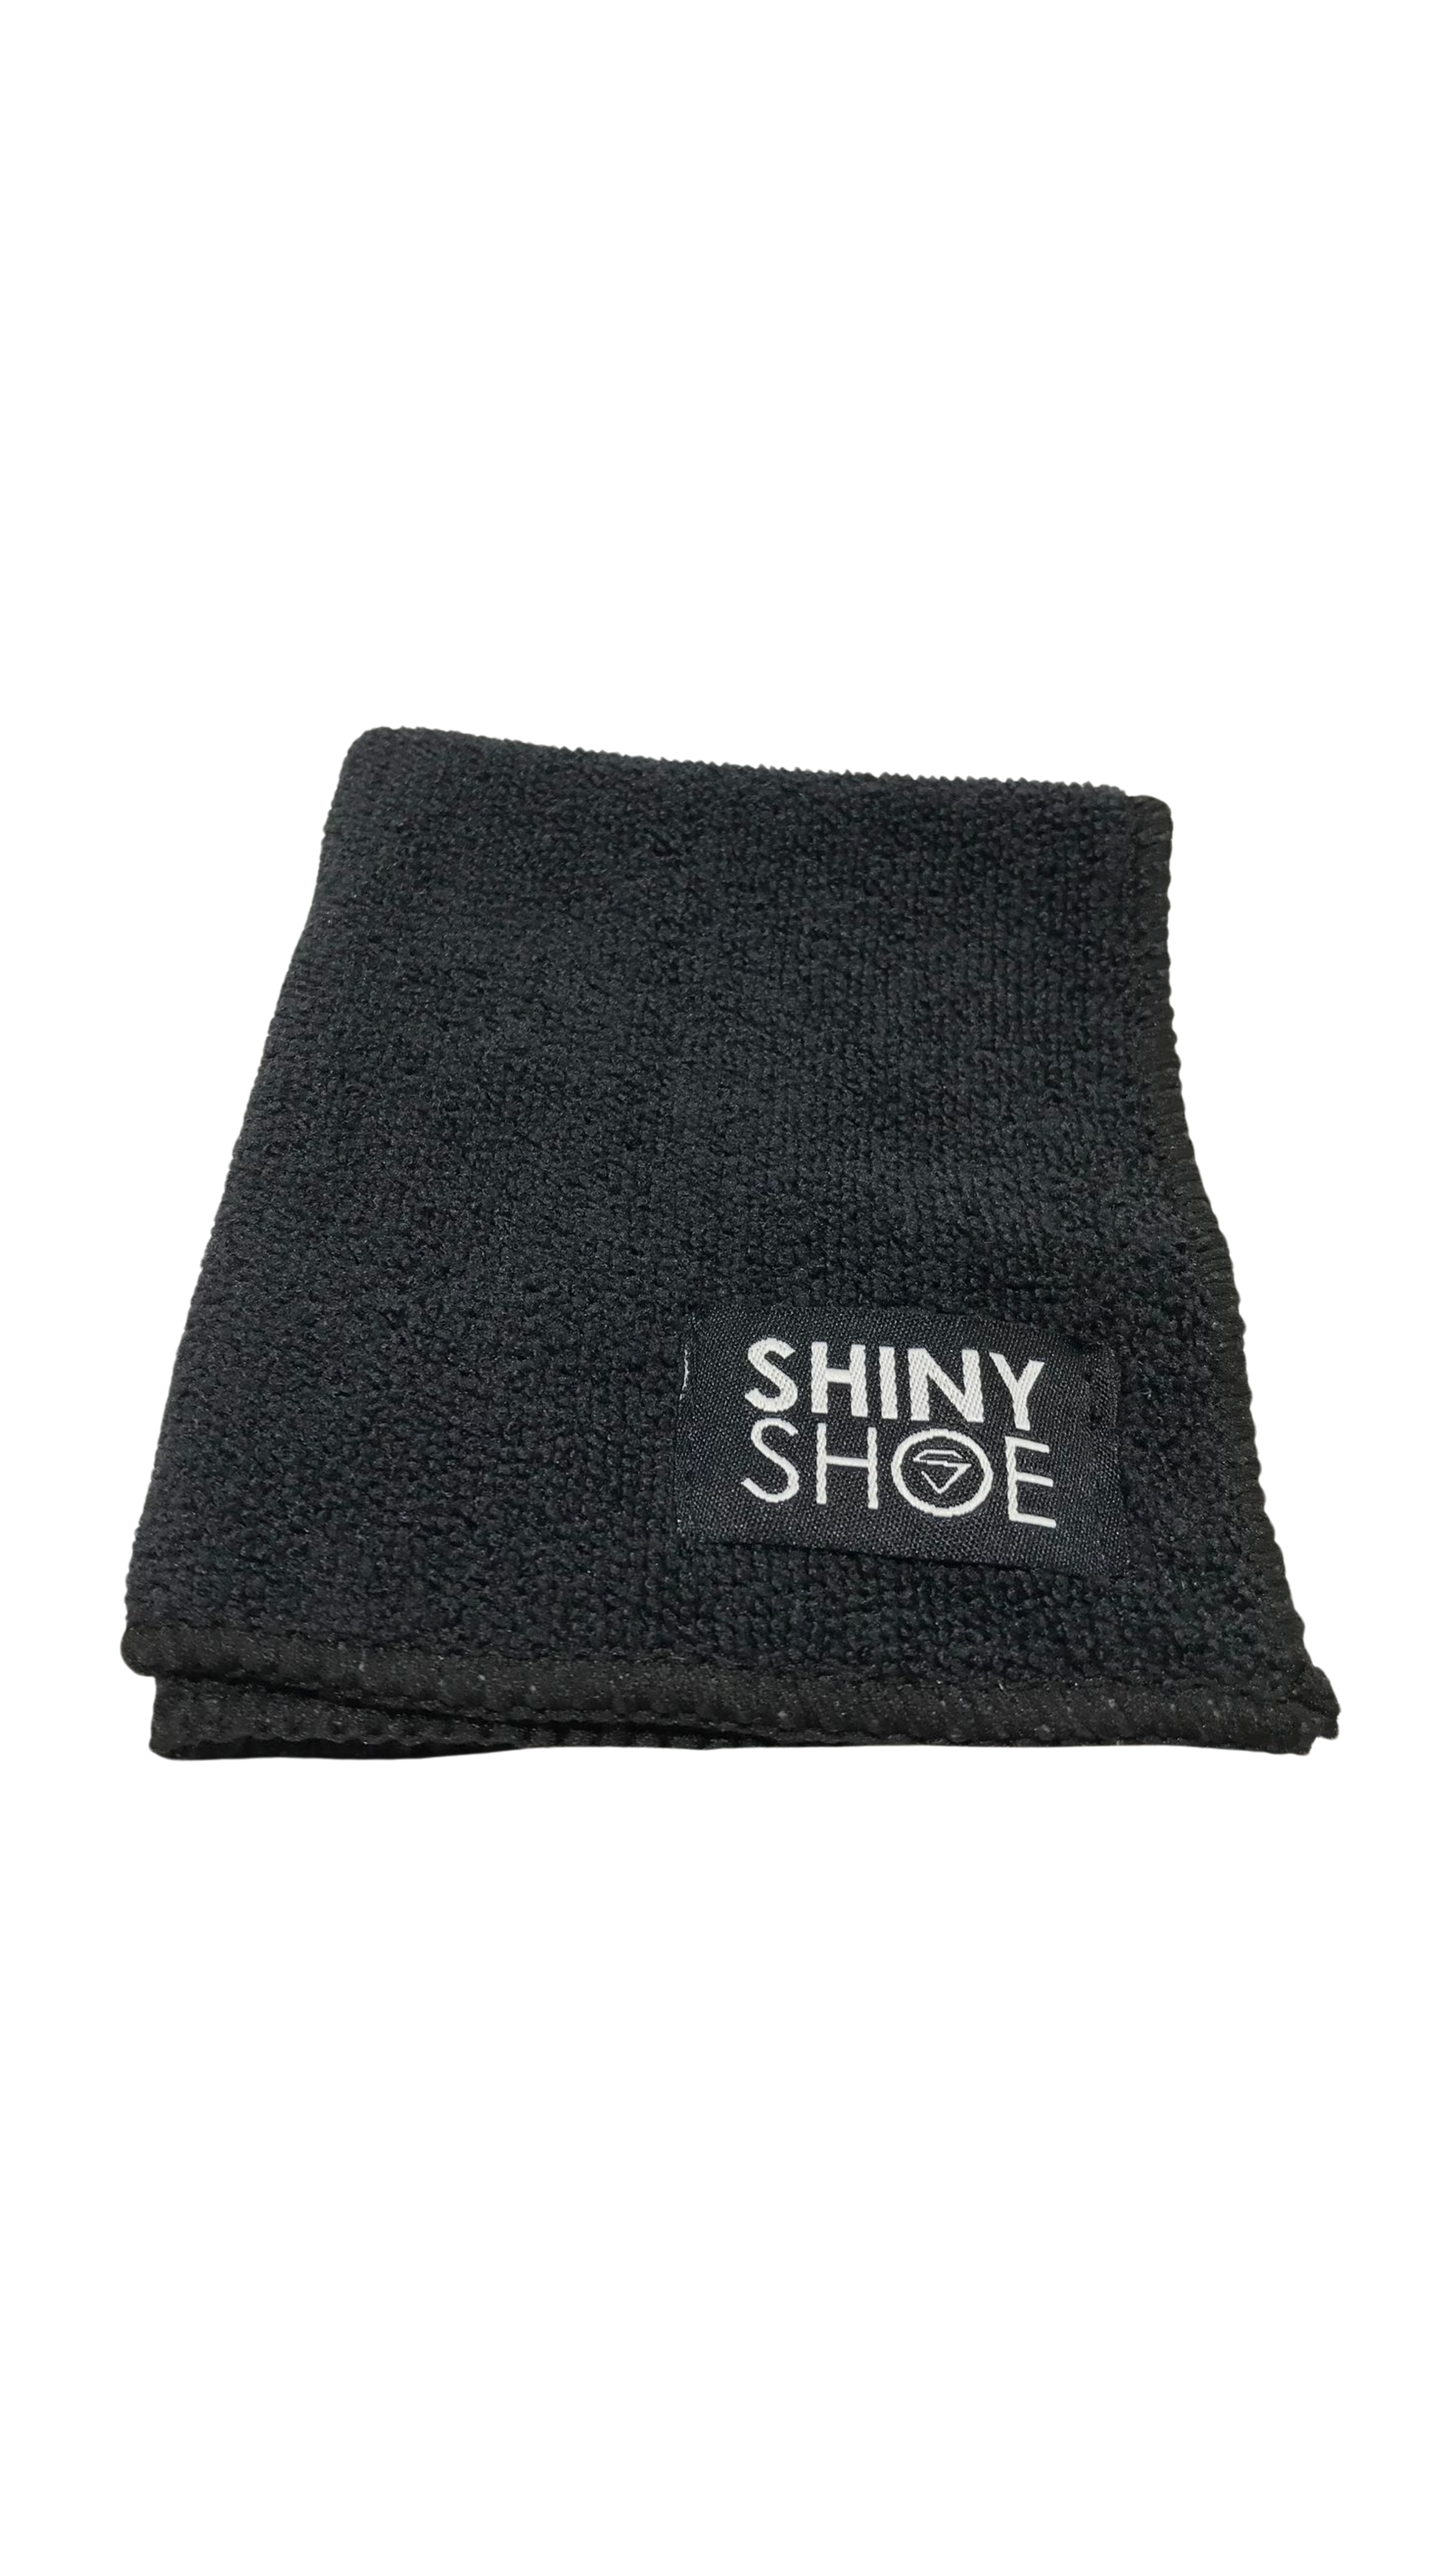 Shiny Shoe (Cleaning Kit)